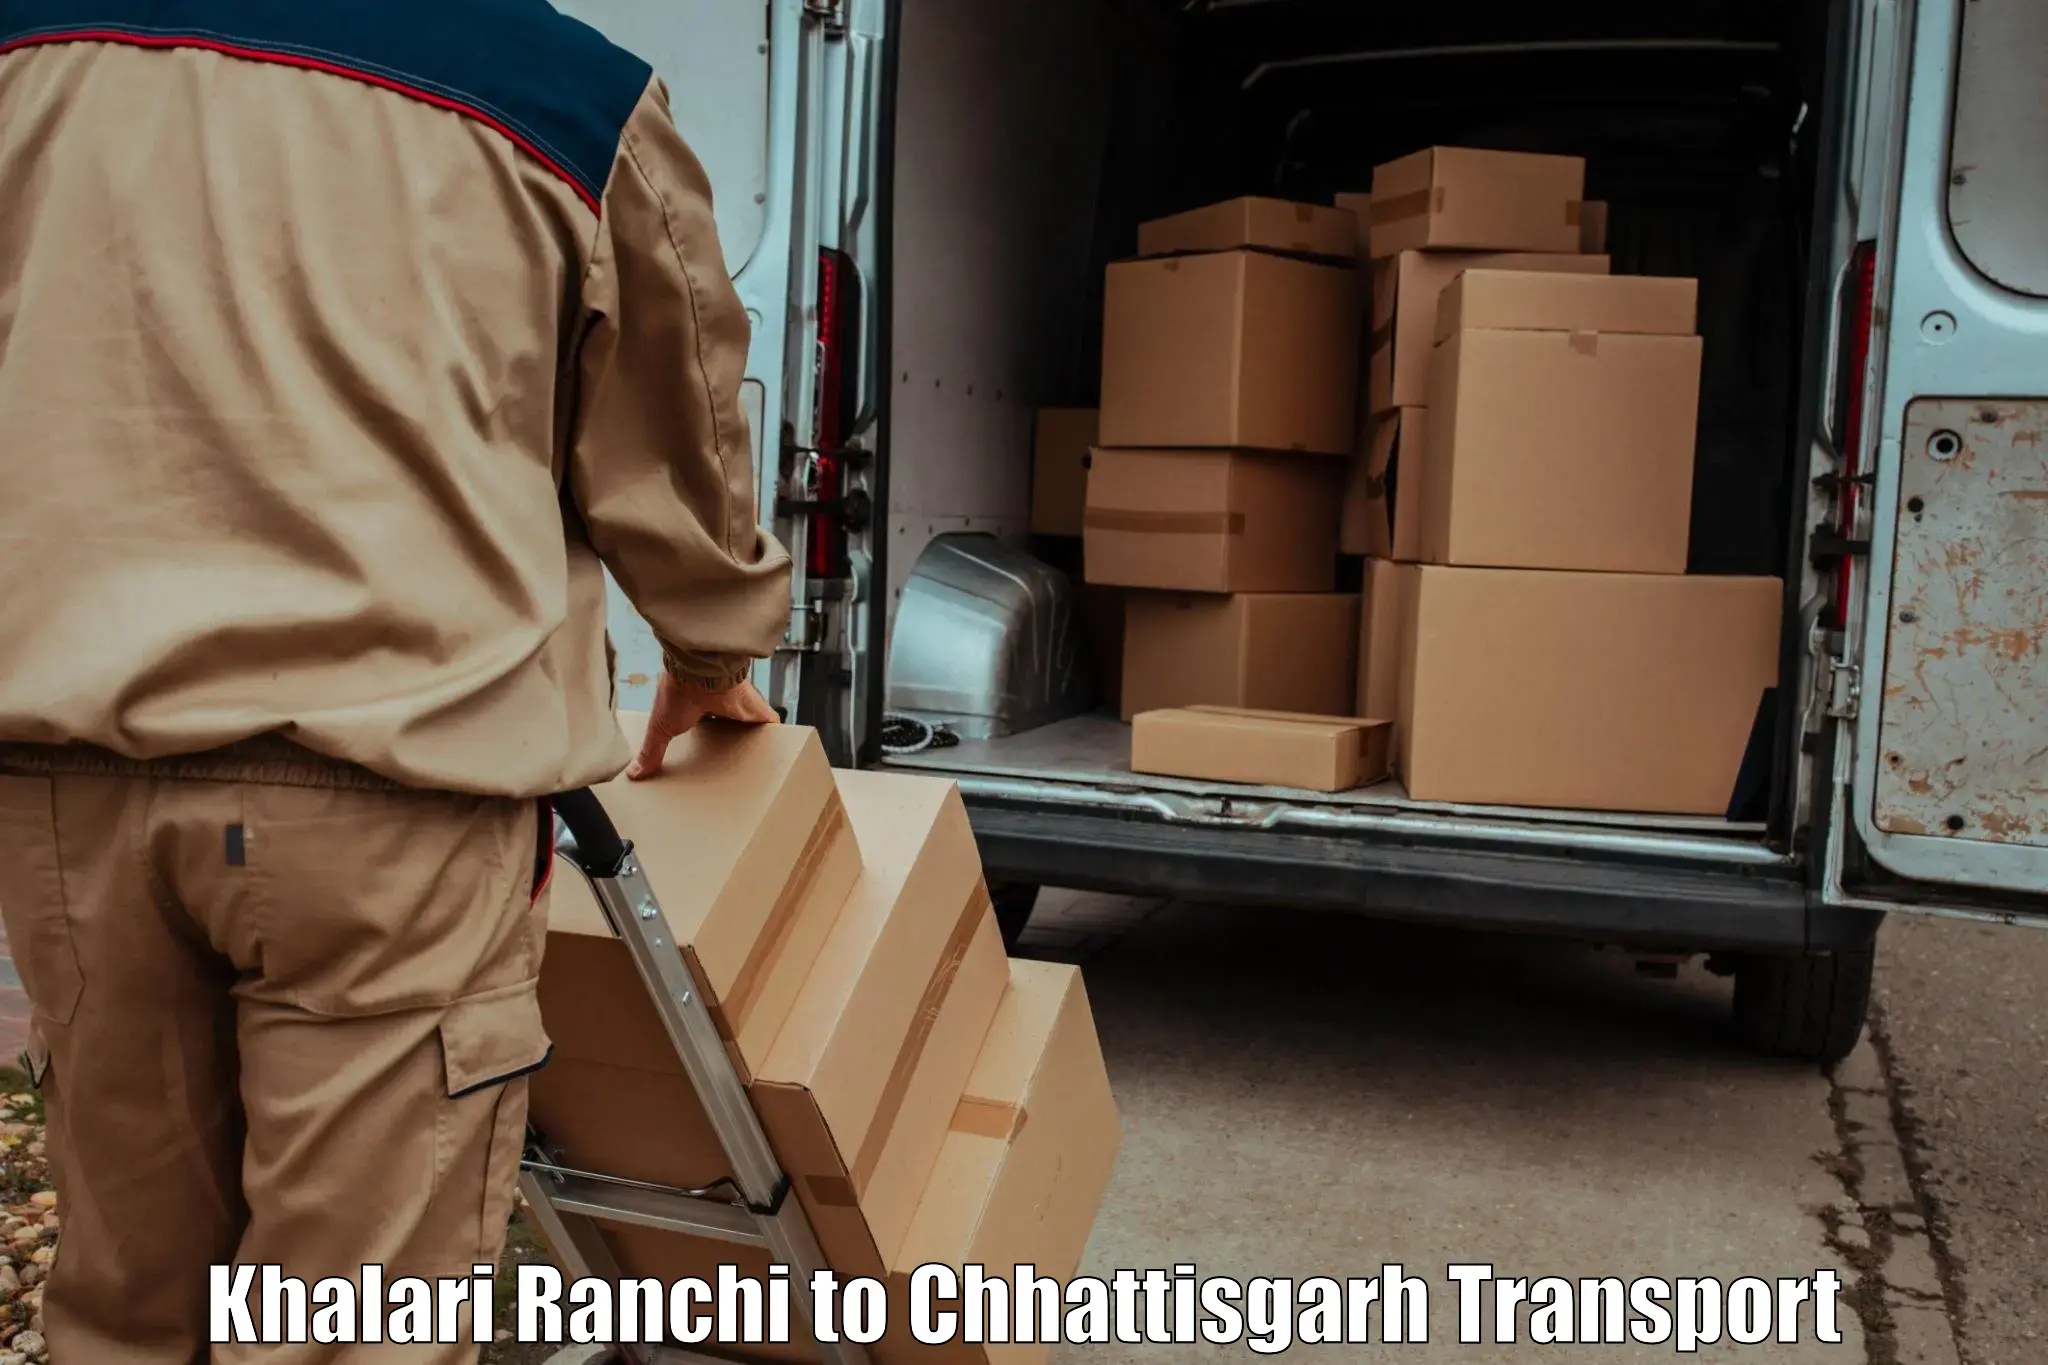 Furniture transport service Khalari Ranchi to Bhatapara